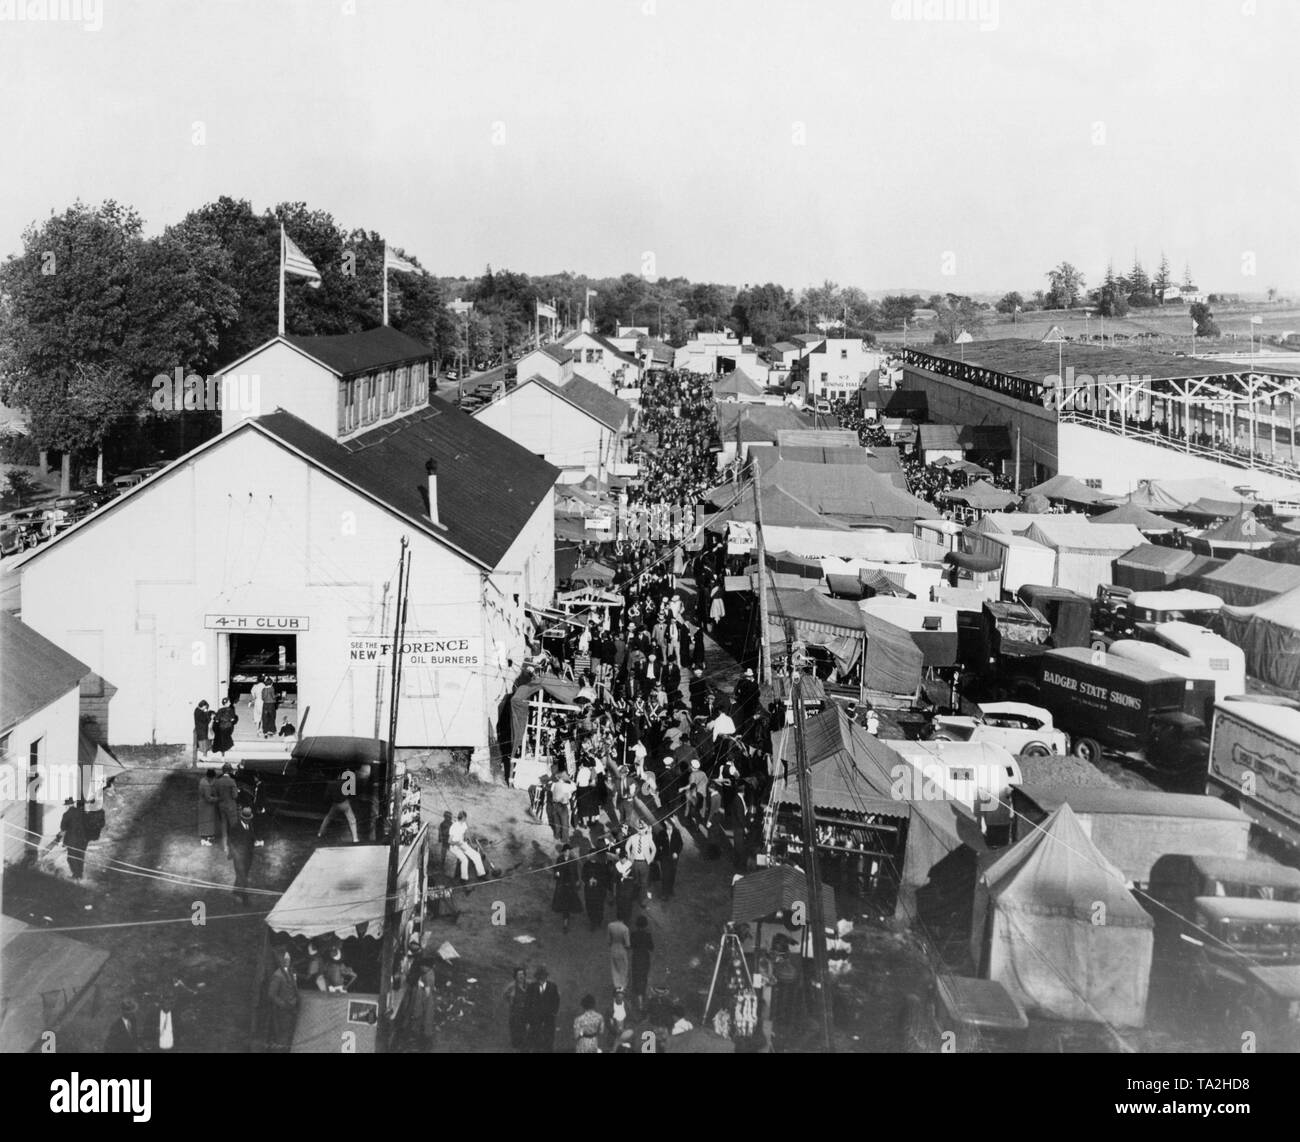 Vue sur le parc des expositions dans la région de Beaver Dam, l'état du Wisconsin, le 21 octobre 1937. Sur la gauche, les immeubles de la marché. À droite, des tentes provisoires. Banque D'Images